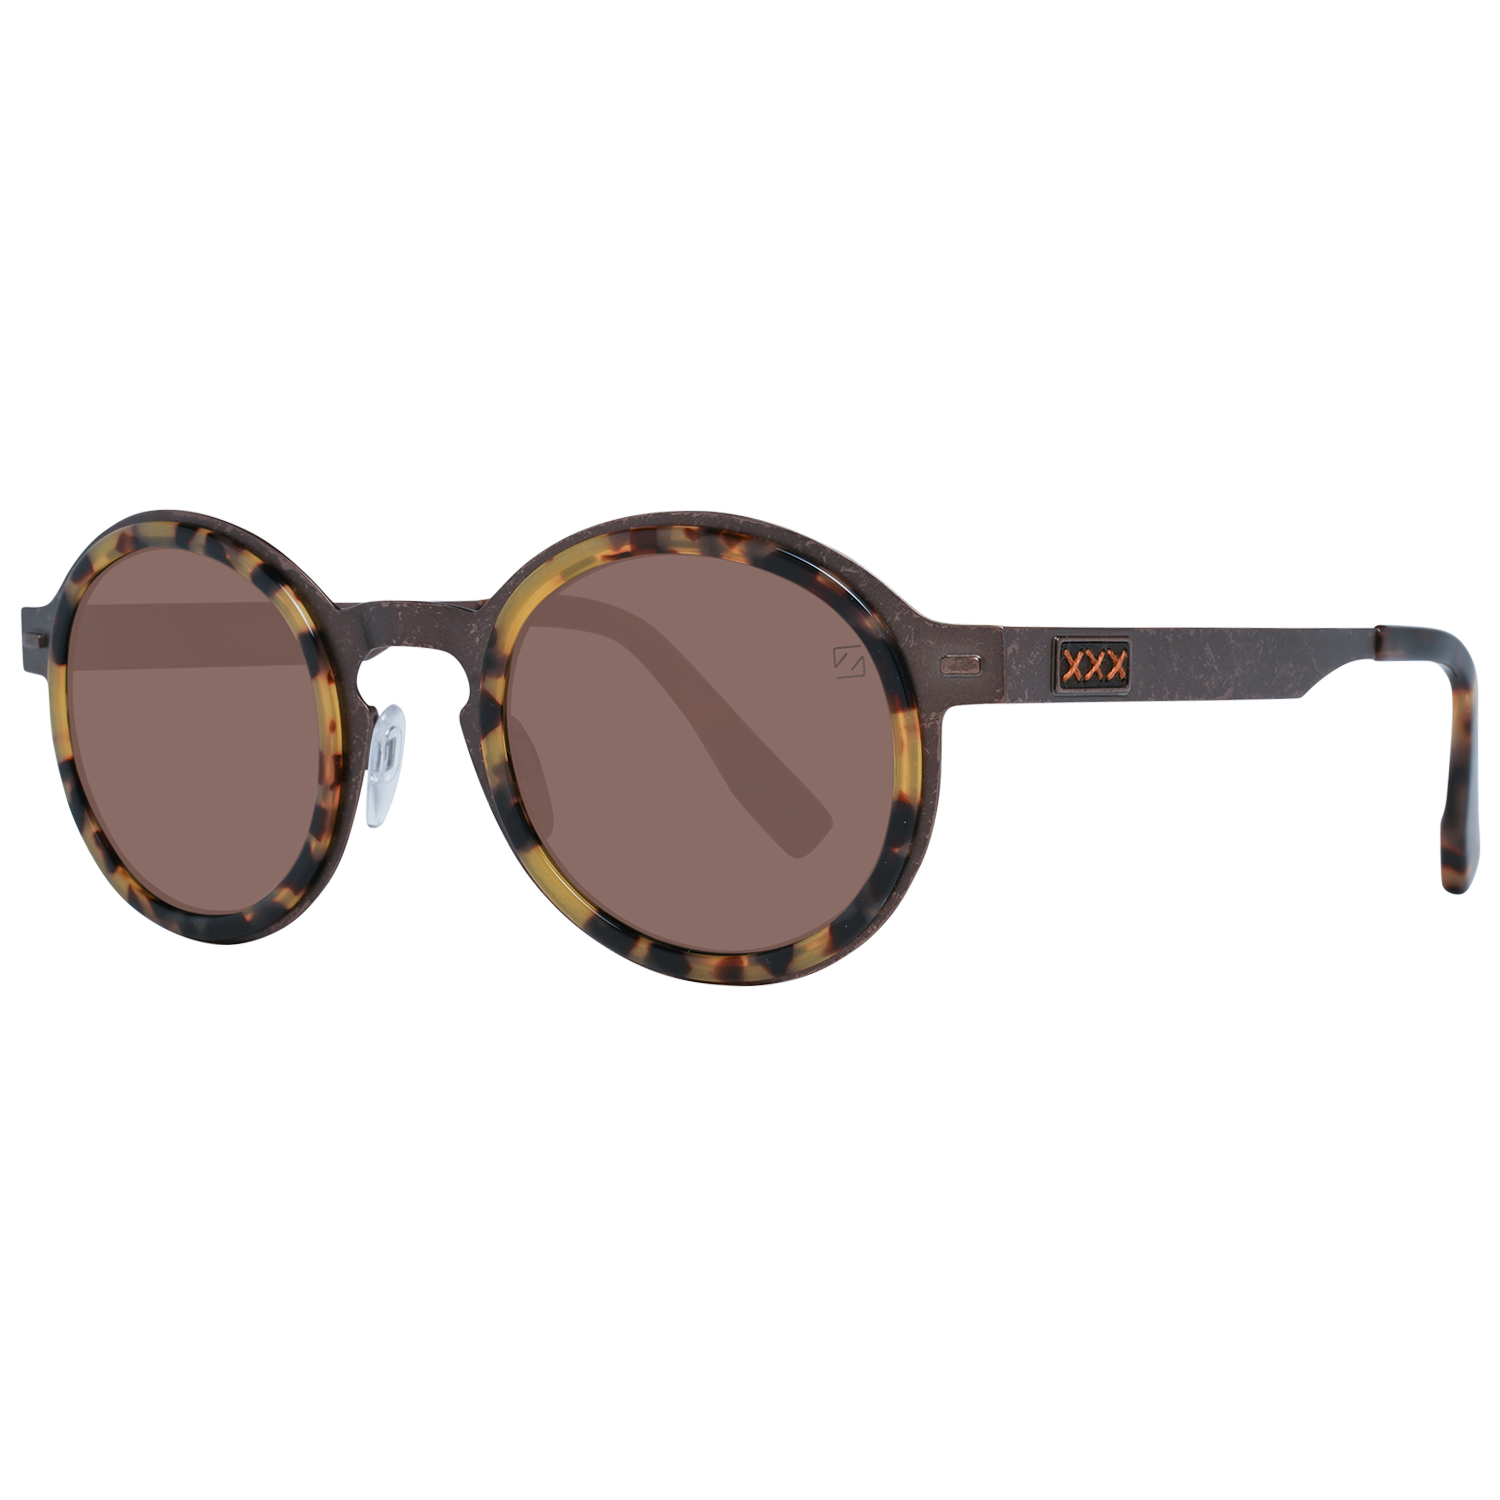 Zegna Couture Sunglasses Zegna Couture Sunglasses ZC0006 49 38M Titanium Eyeglasses Eyewear UK USA Australia 